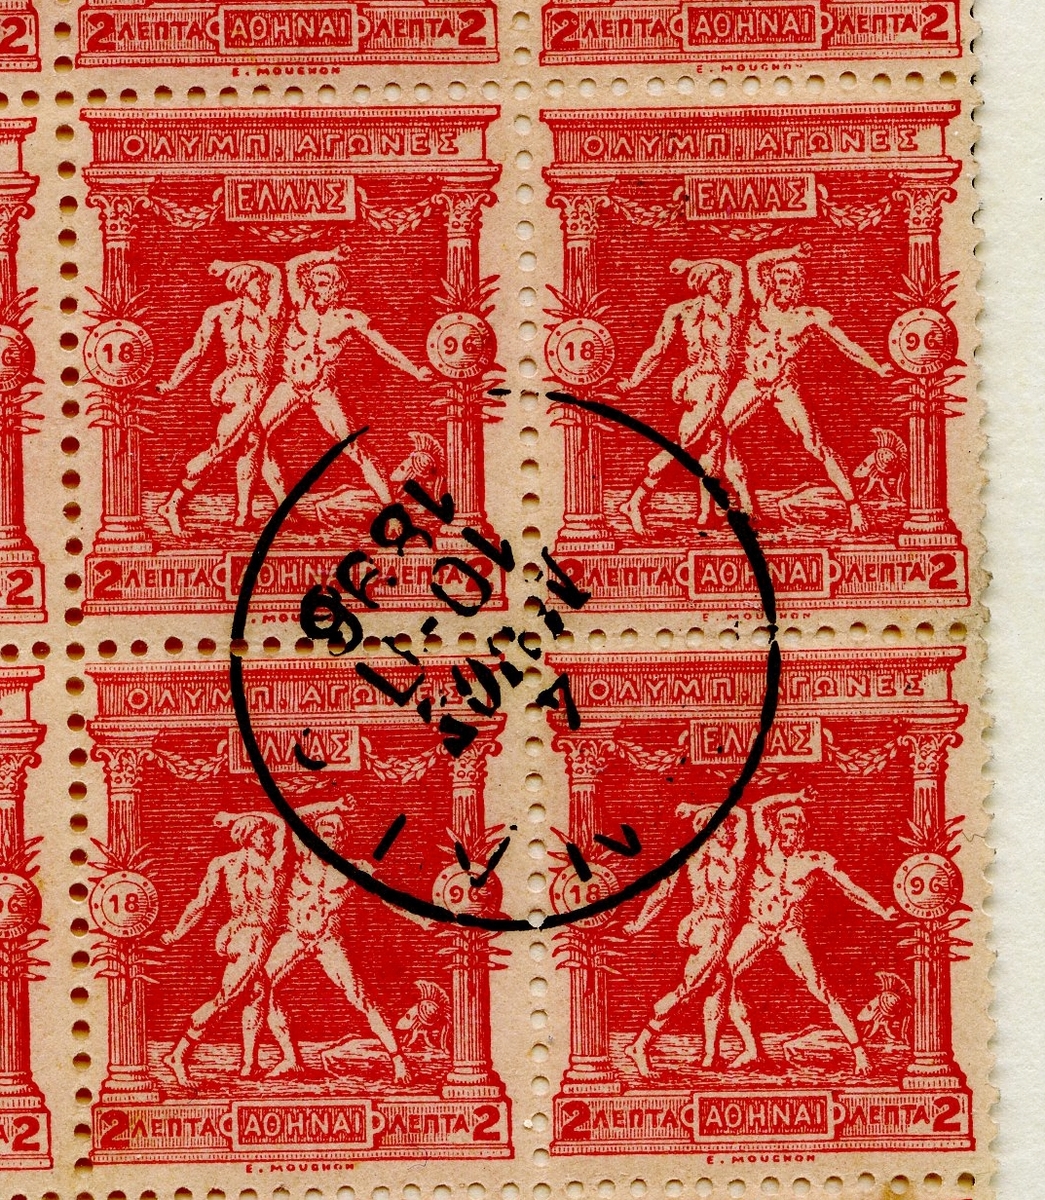 16 frimerker i en blokk. Hvert frimerke viser to brytere innenfor tempelsøyler på rød bakgrunnsfarge. Frimerkene er stemplet i 1896.